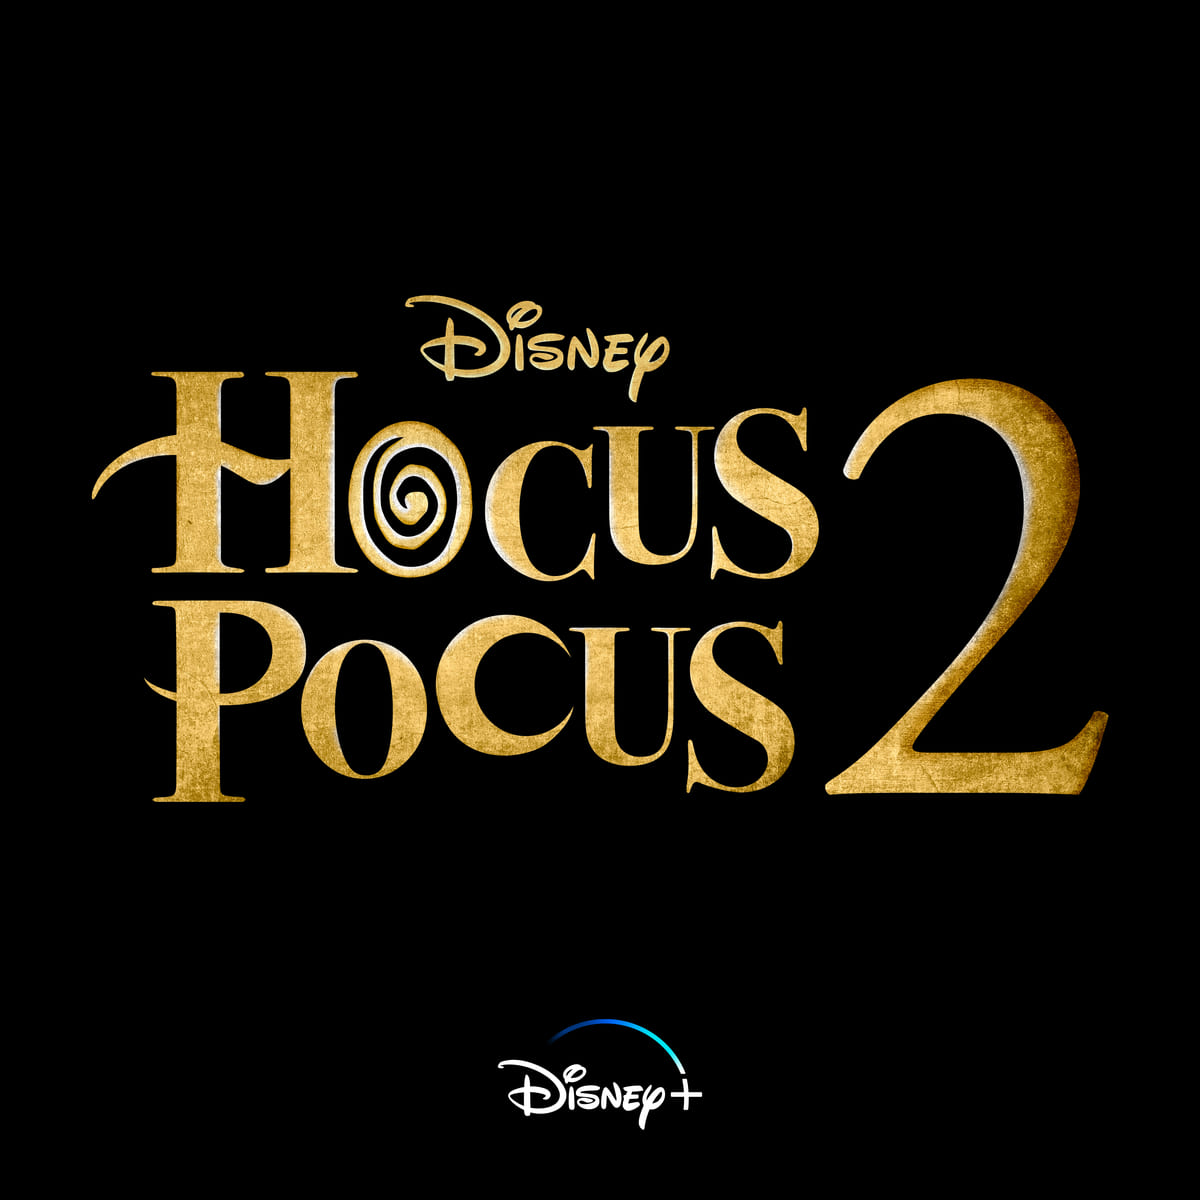 ハロウィンファンタジーの名作 ホーカス ポーカス の続編 ディズニープラス ホーカス ポーカス 2 原題 Dtimes